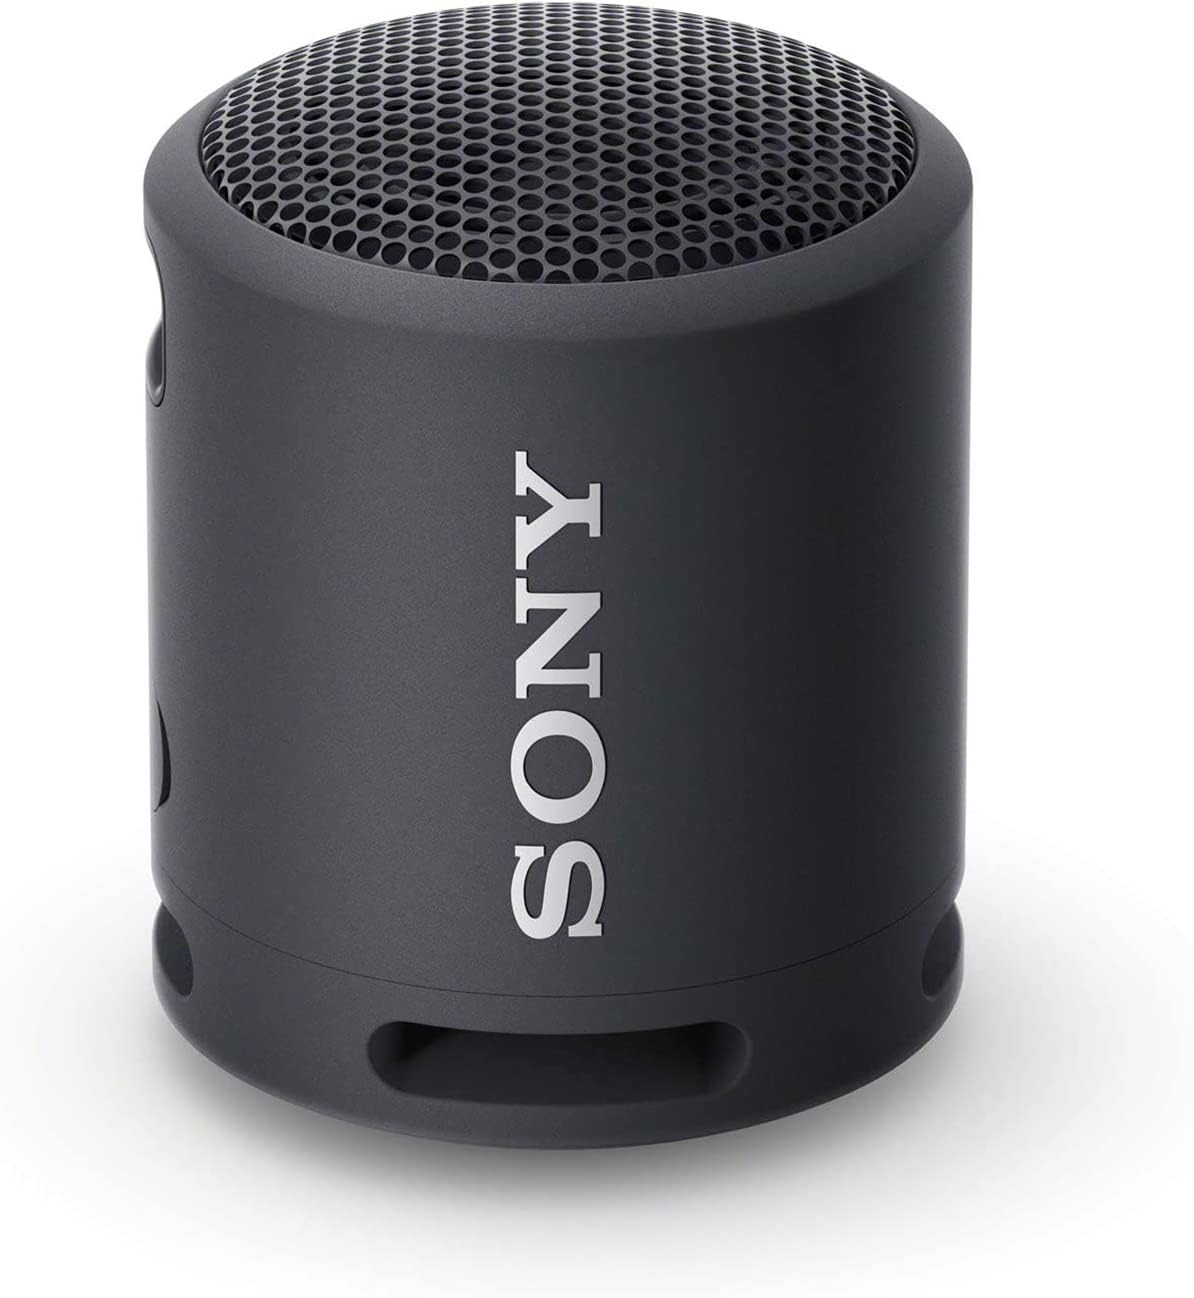 Sony SRS-XB13 EXTRA BASS™ Portable Wireless Speaker (Certified Refurbished - 90 Days Warranty)